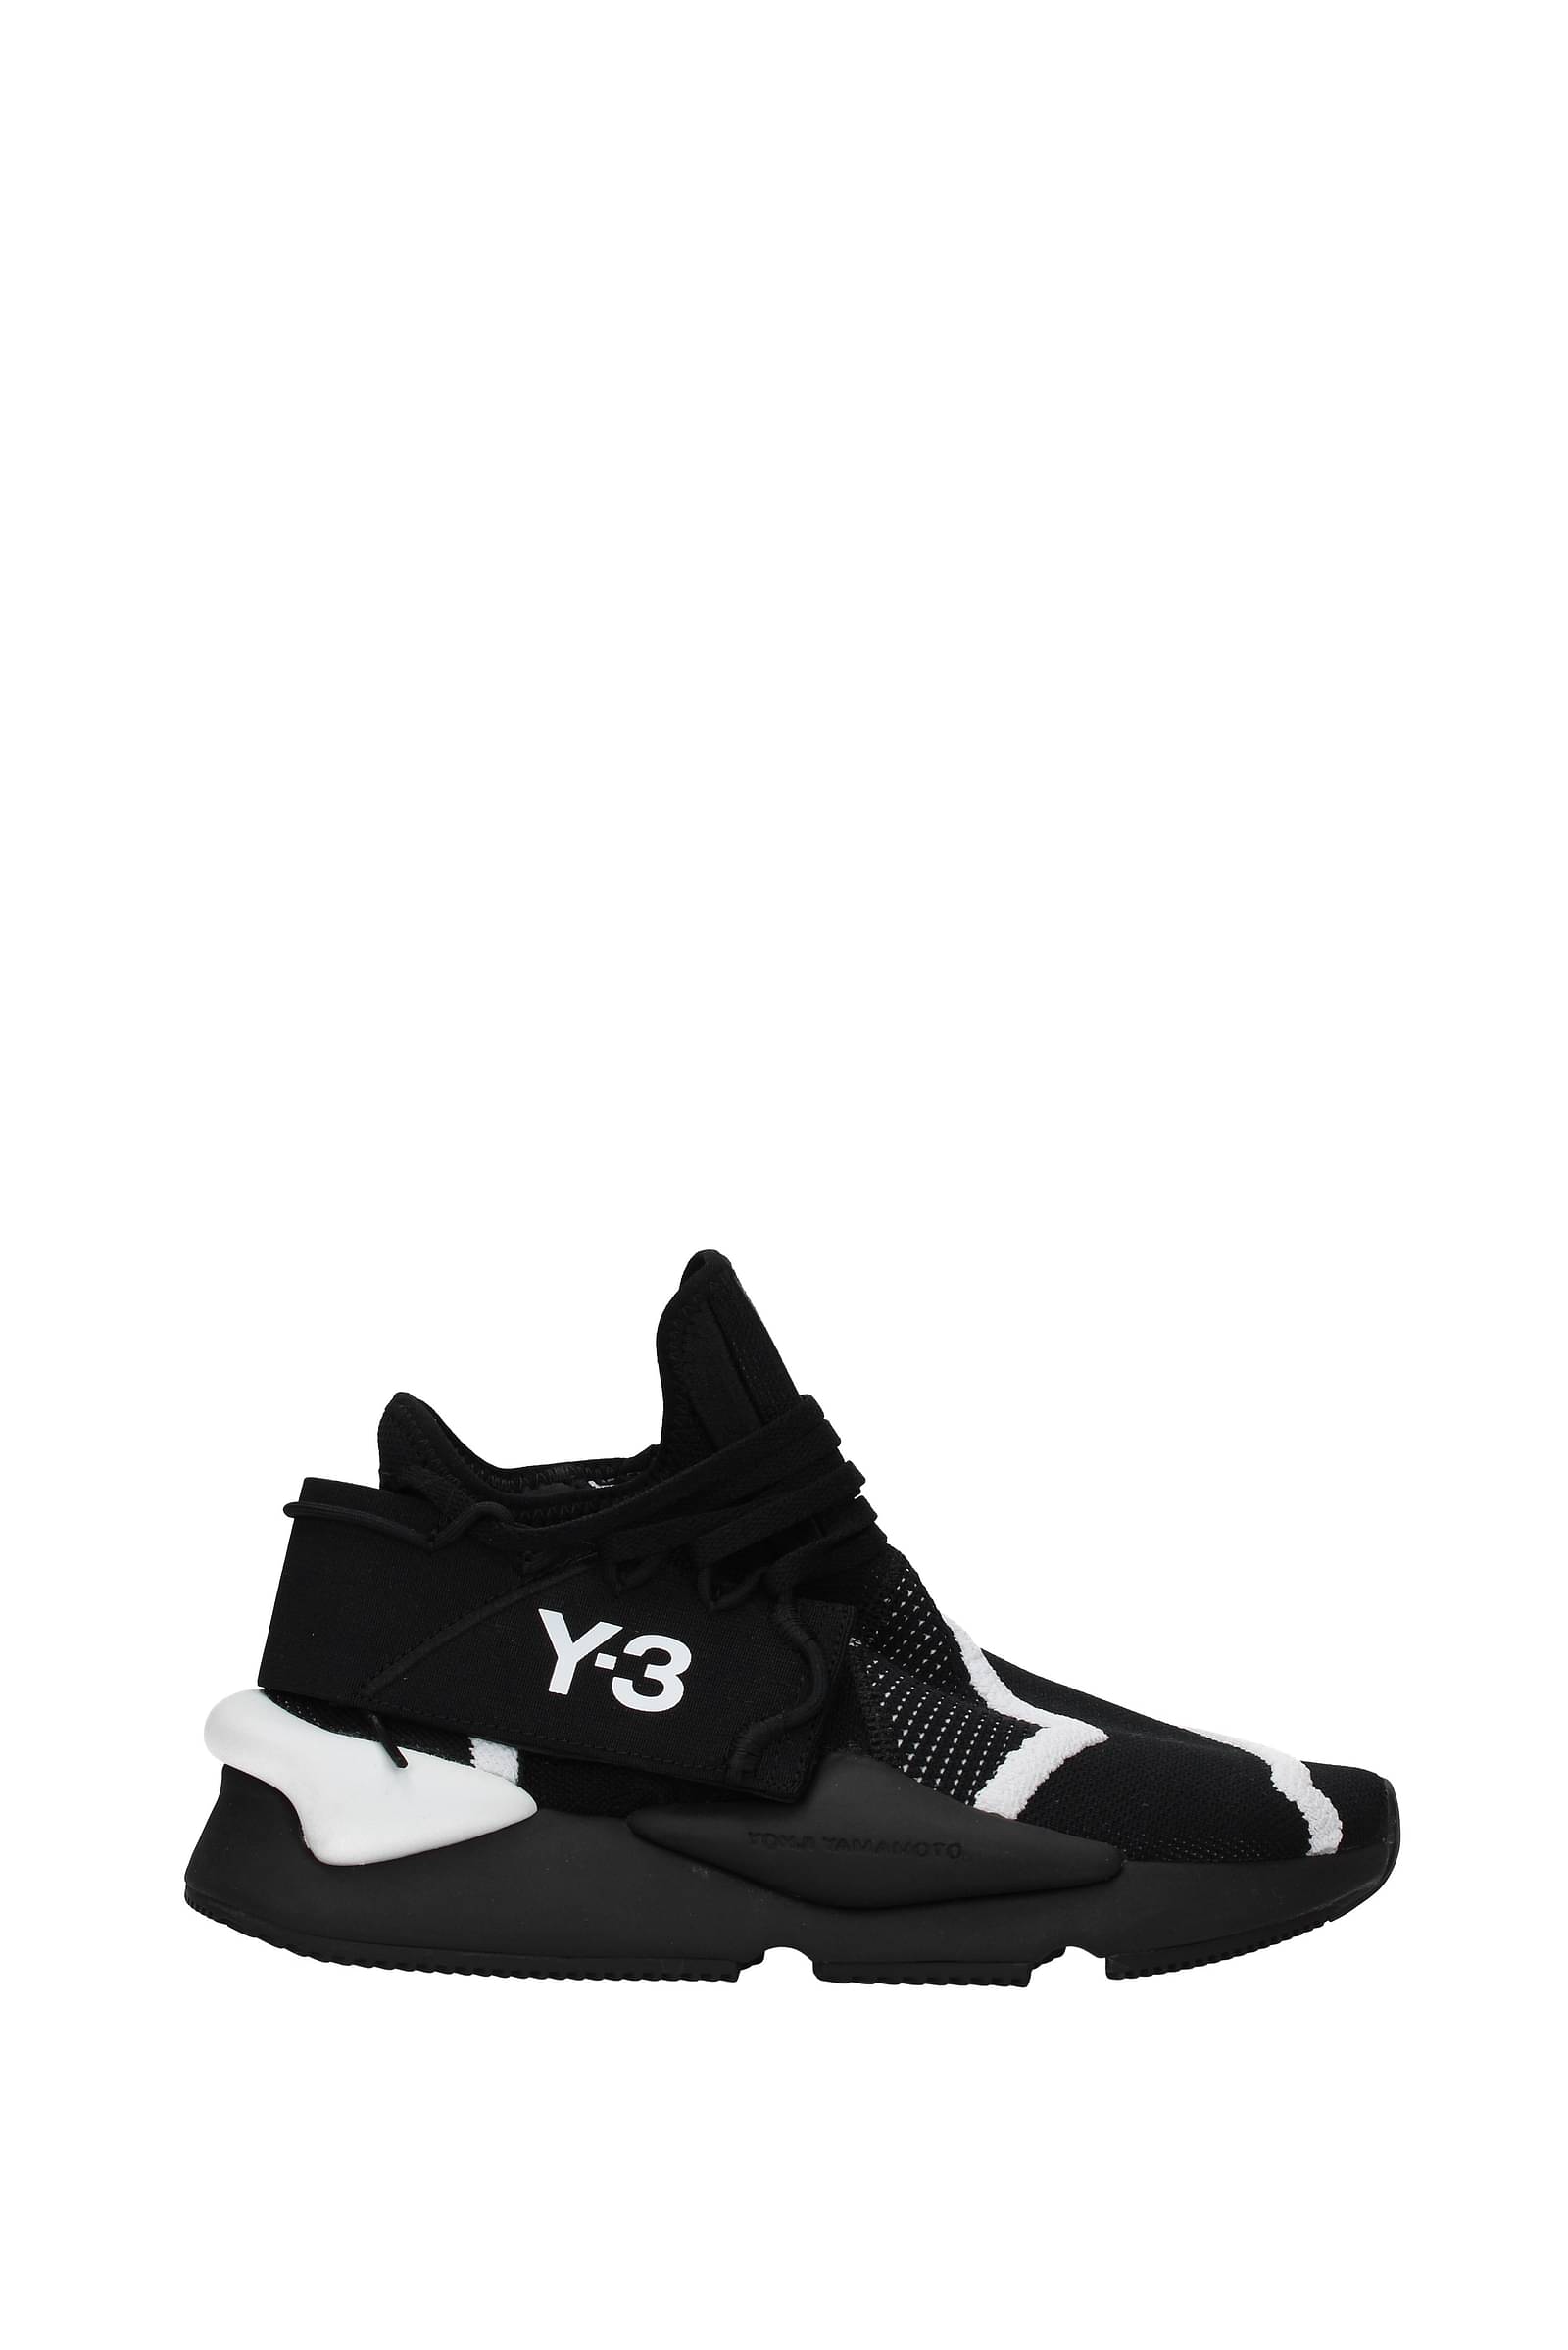 yamamoto sneakers y3